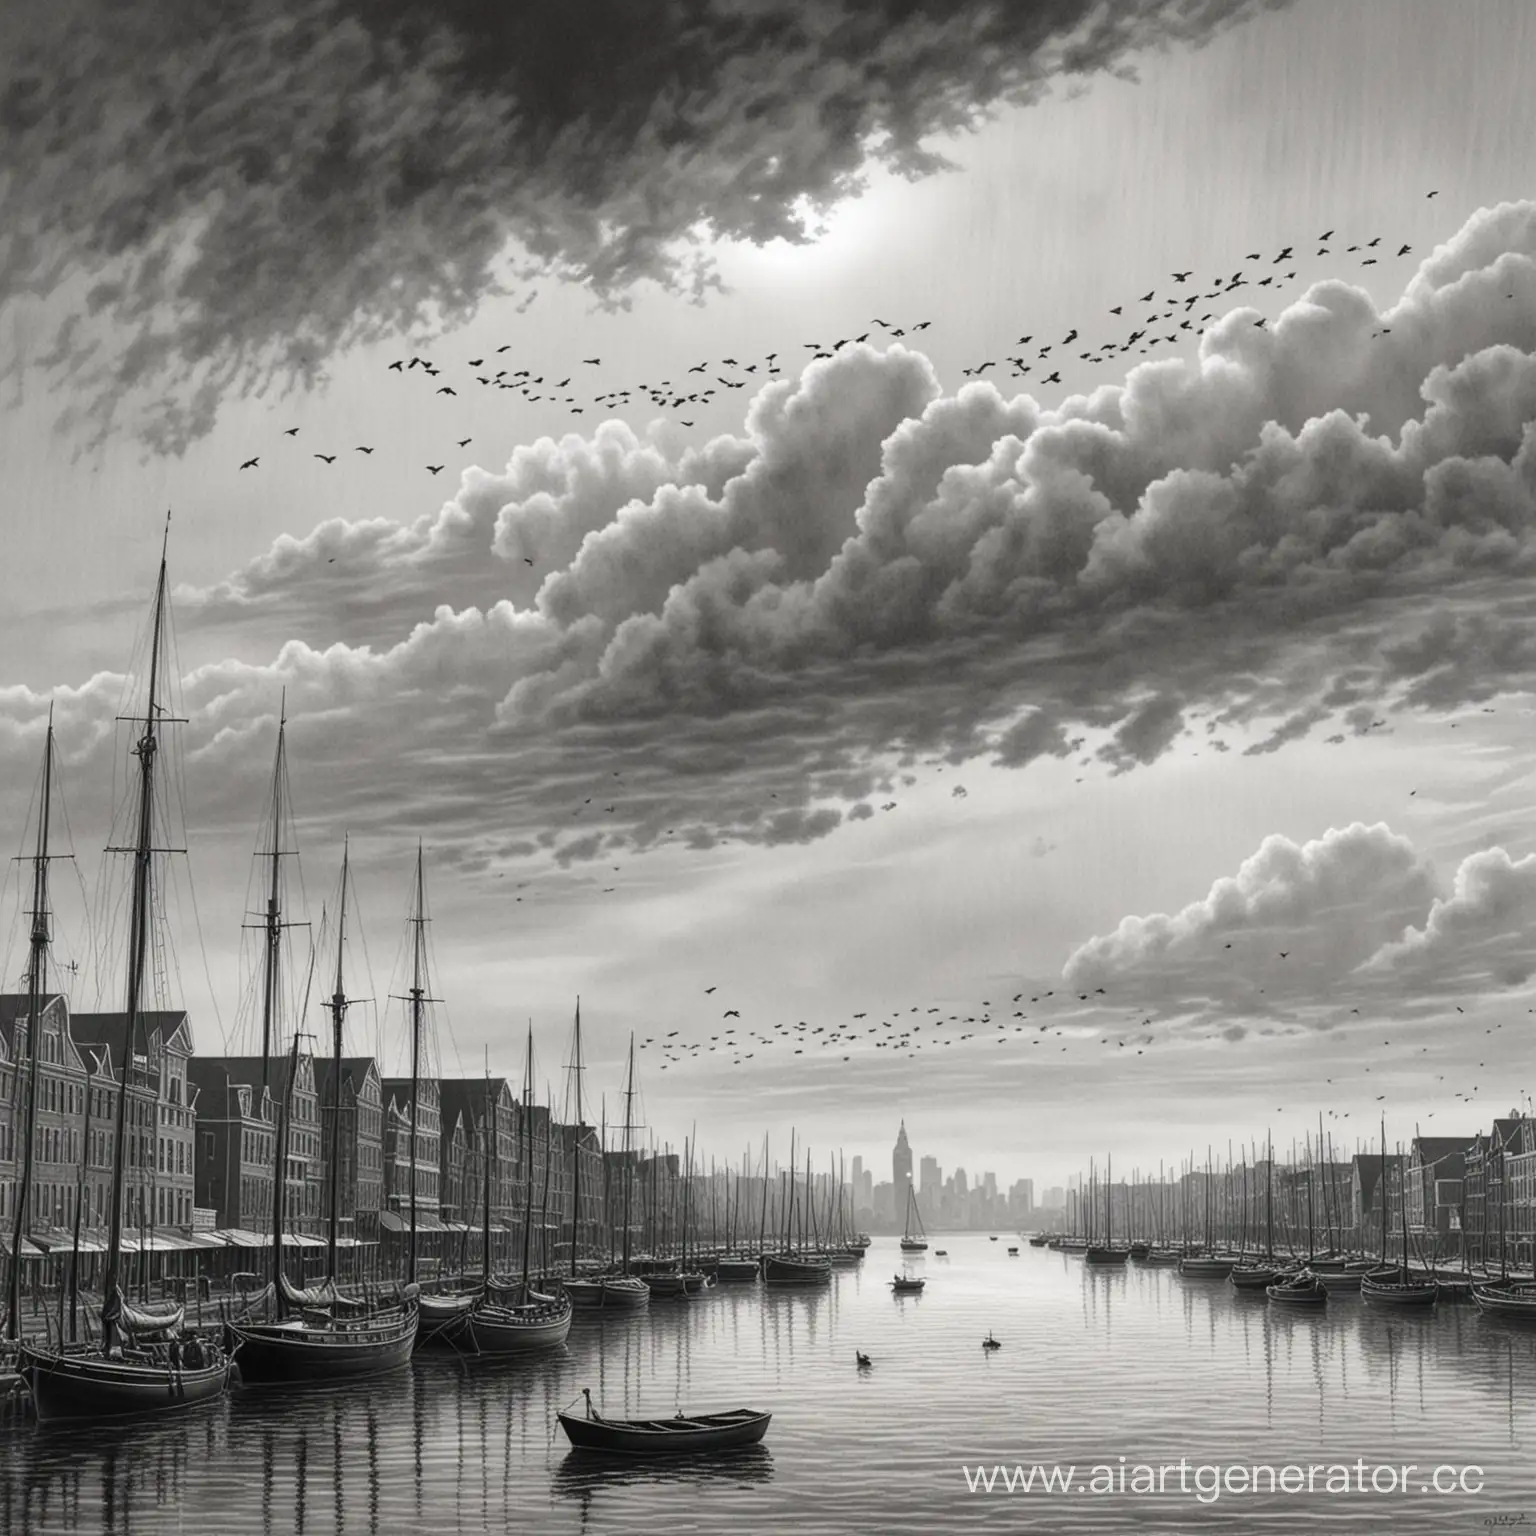 рисунок карандашом в серых тонах набережной города, в небе видна стайка воронов